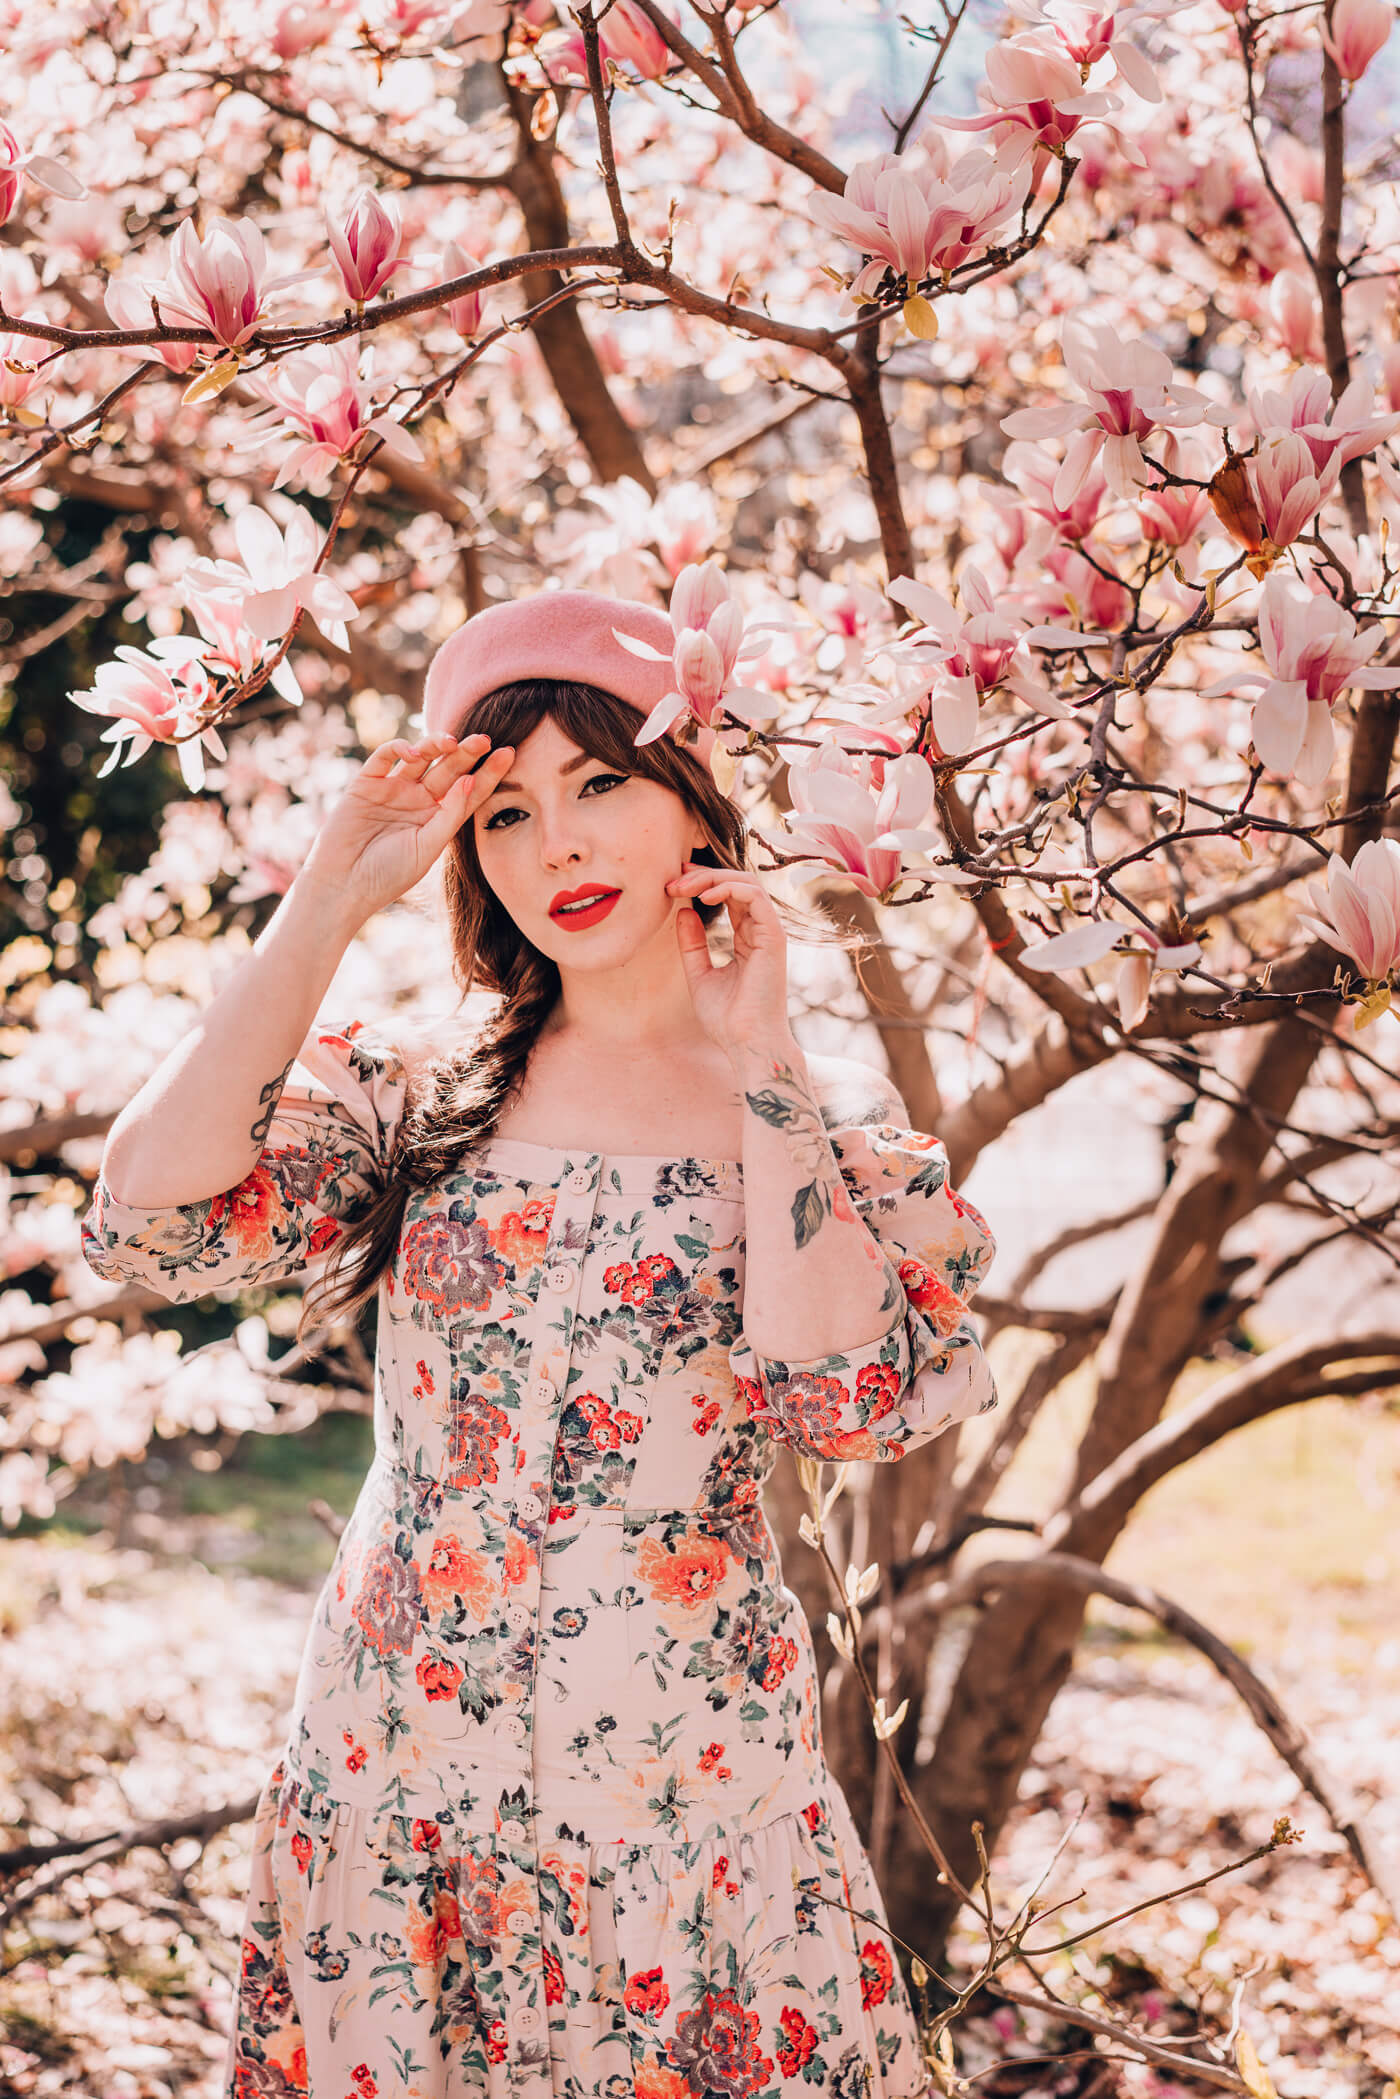 rebecca taylor dress, off the shoulder pink summer floral dress 2018